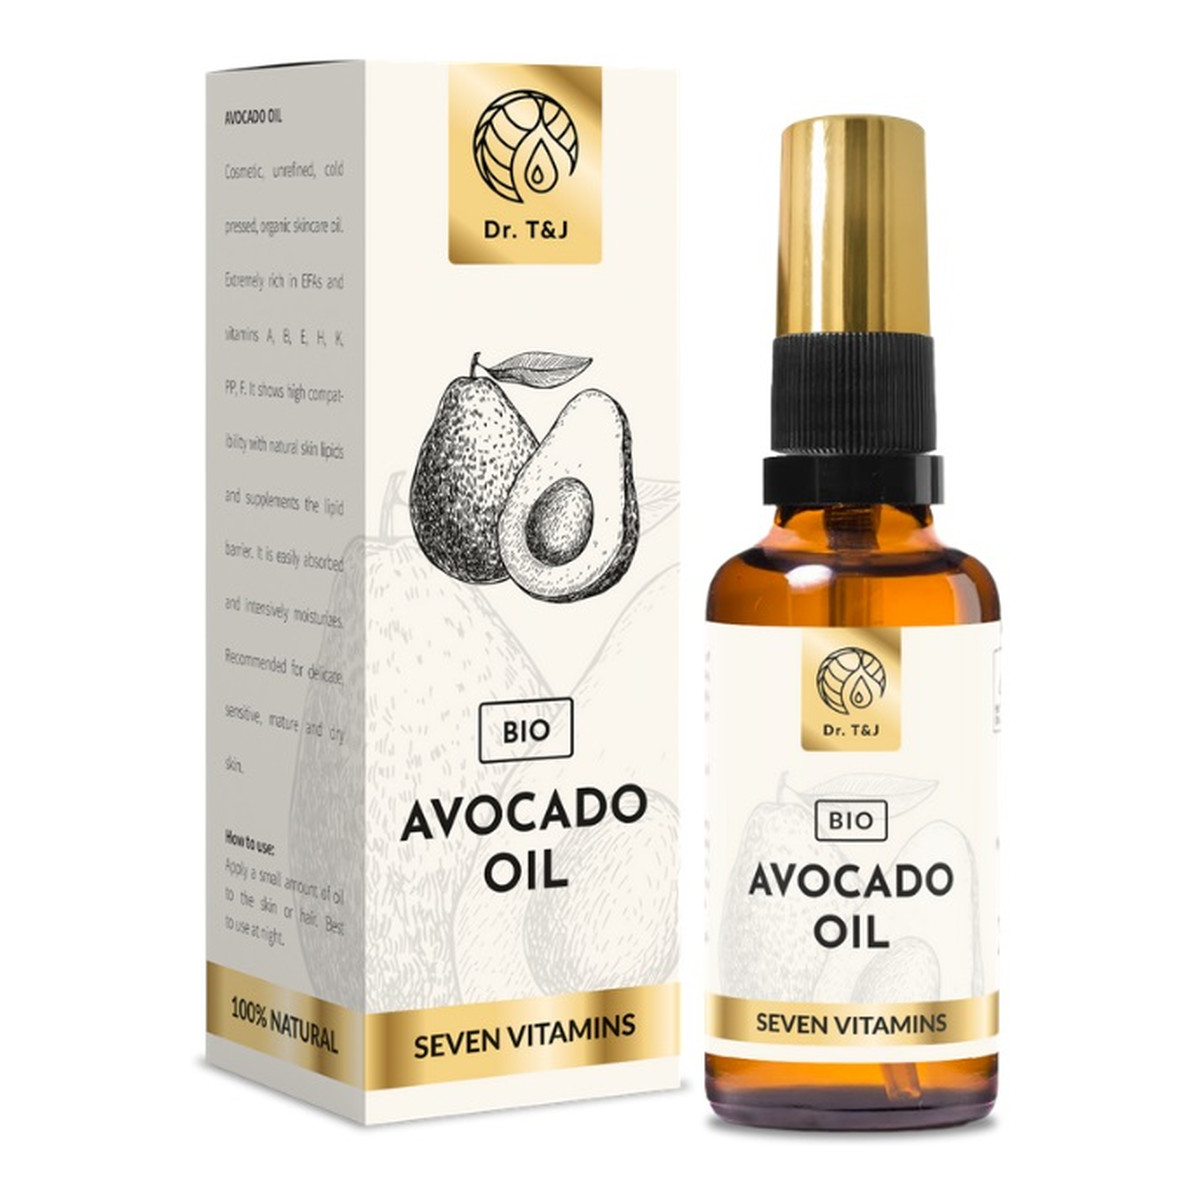 Dr. T&J Avocado Oil naturalny olej awokado BIO 50ml